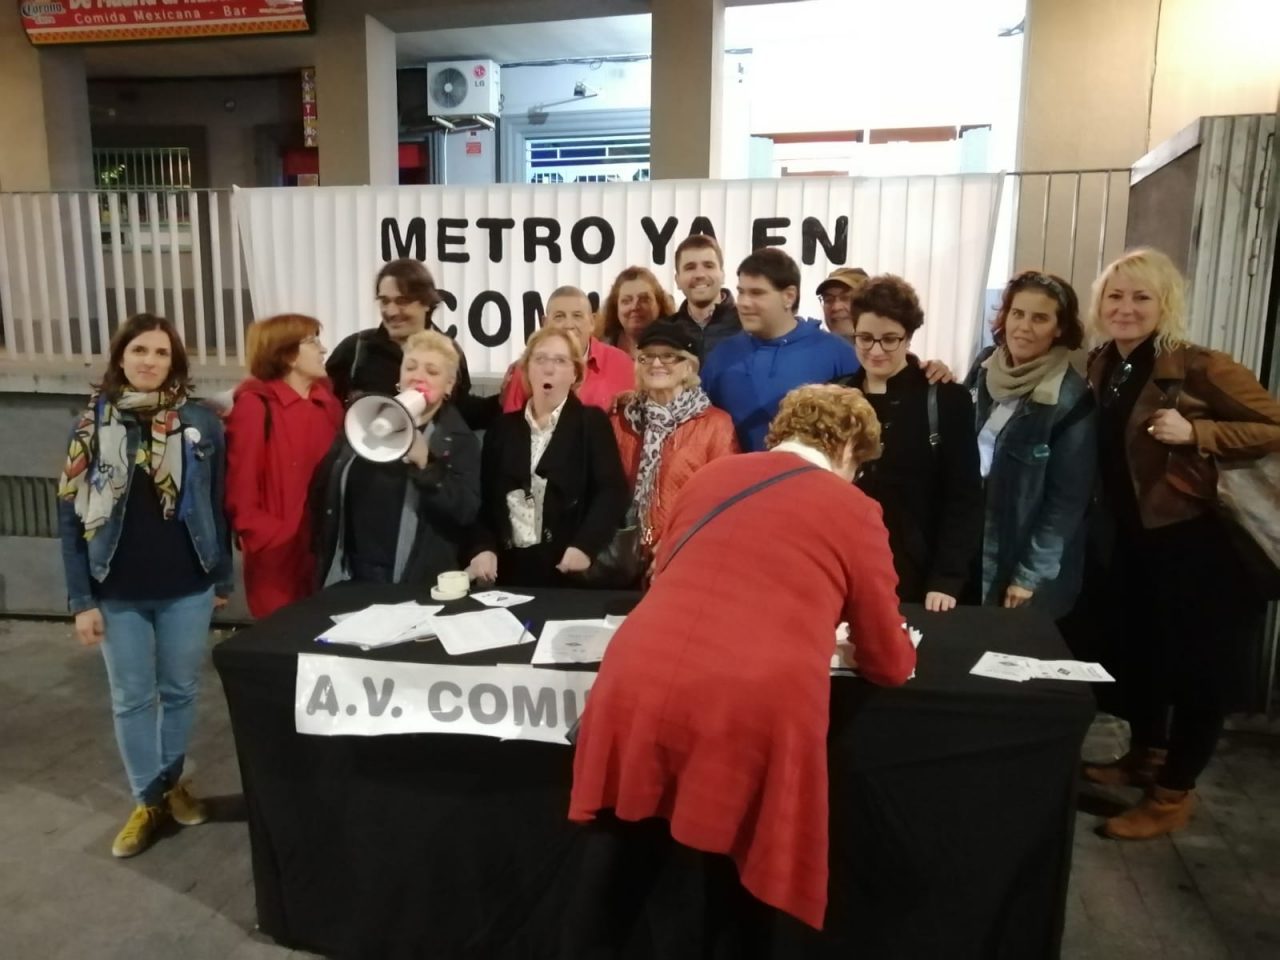 Continúa la campaña por la apertura de una estación de Metro en Comillas (Carabanchel)